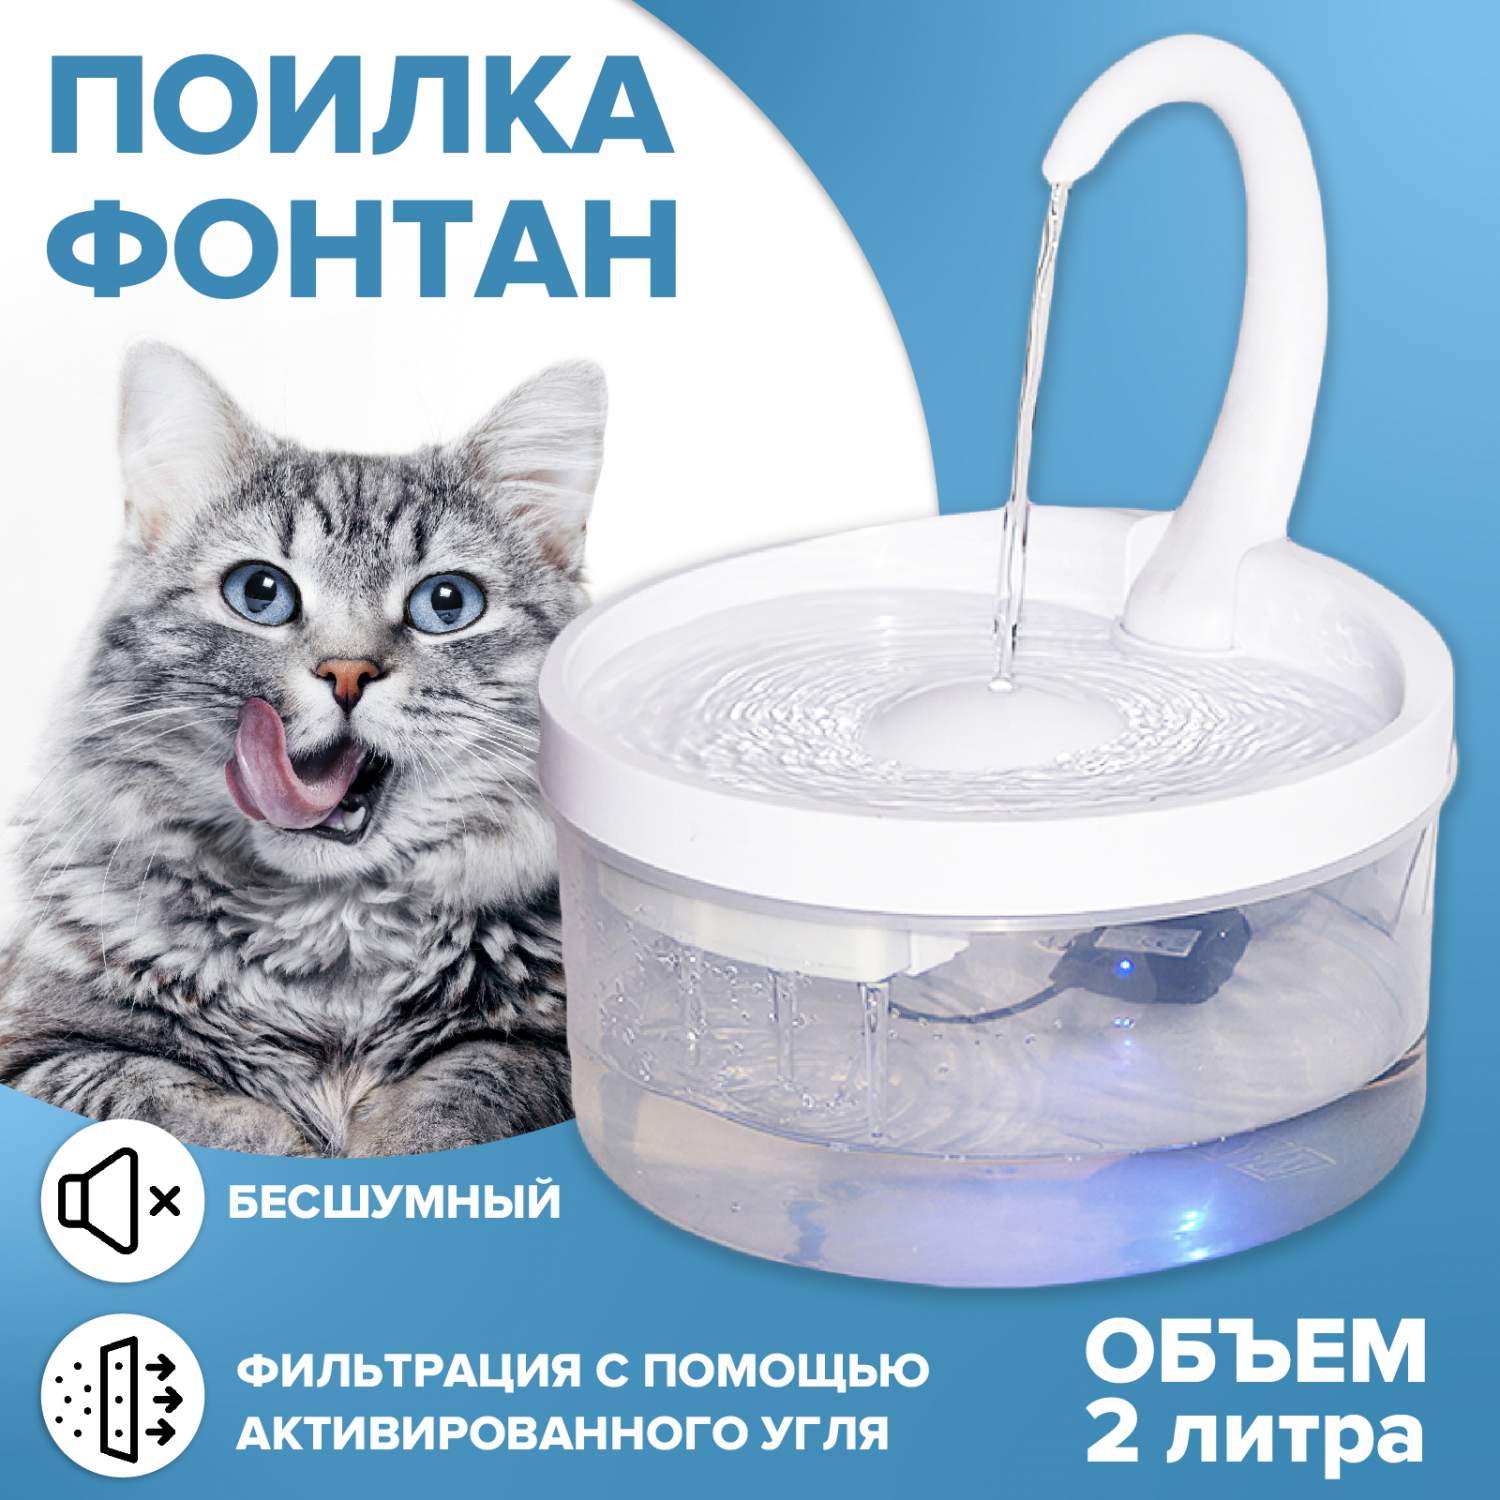 Купить поилка фонтан Evo Beauty автоматическая с фильтром для животных, для  кошек и собак, цены на Мегамаркет | Артикул: 600007227490